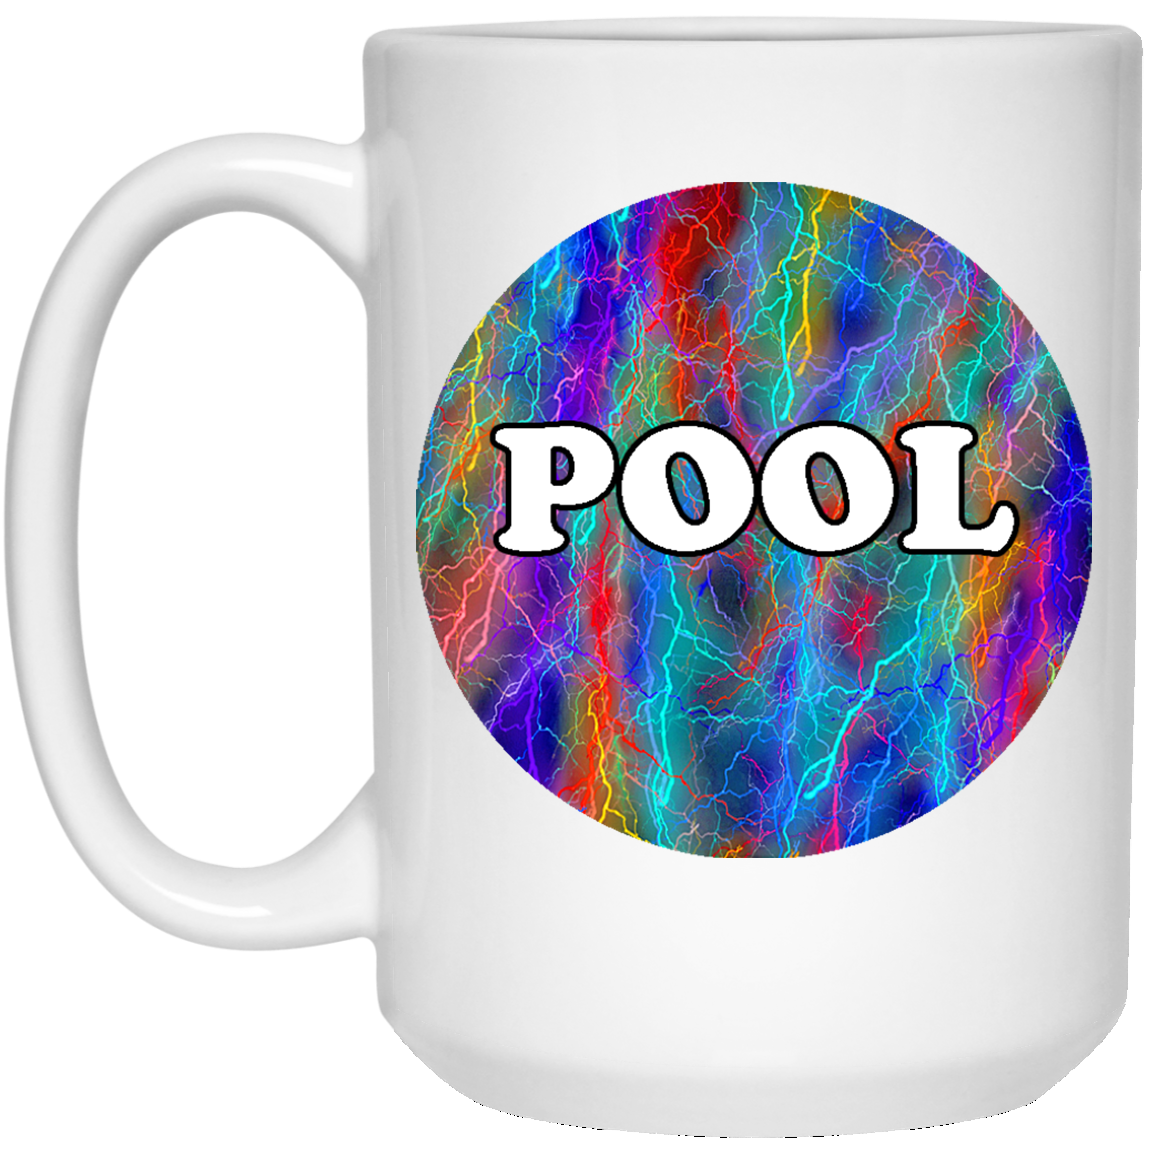 Pool Mug